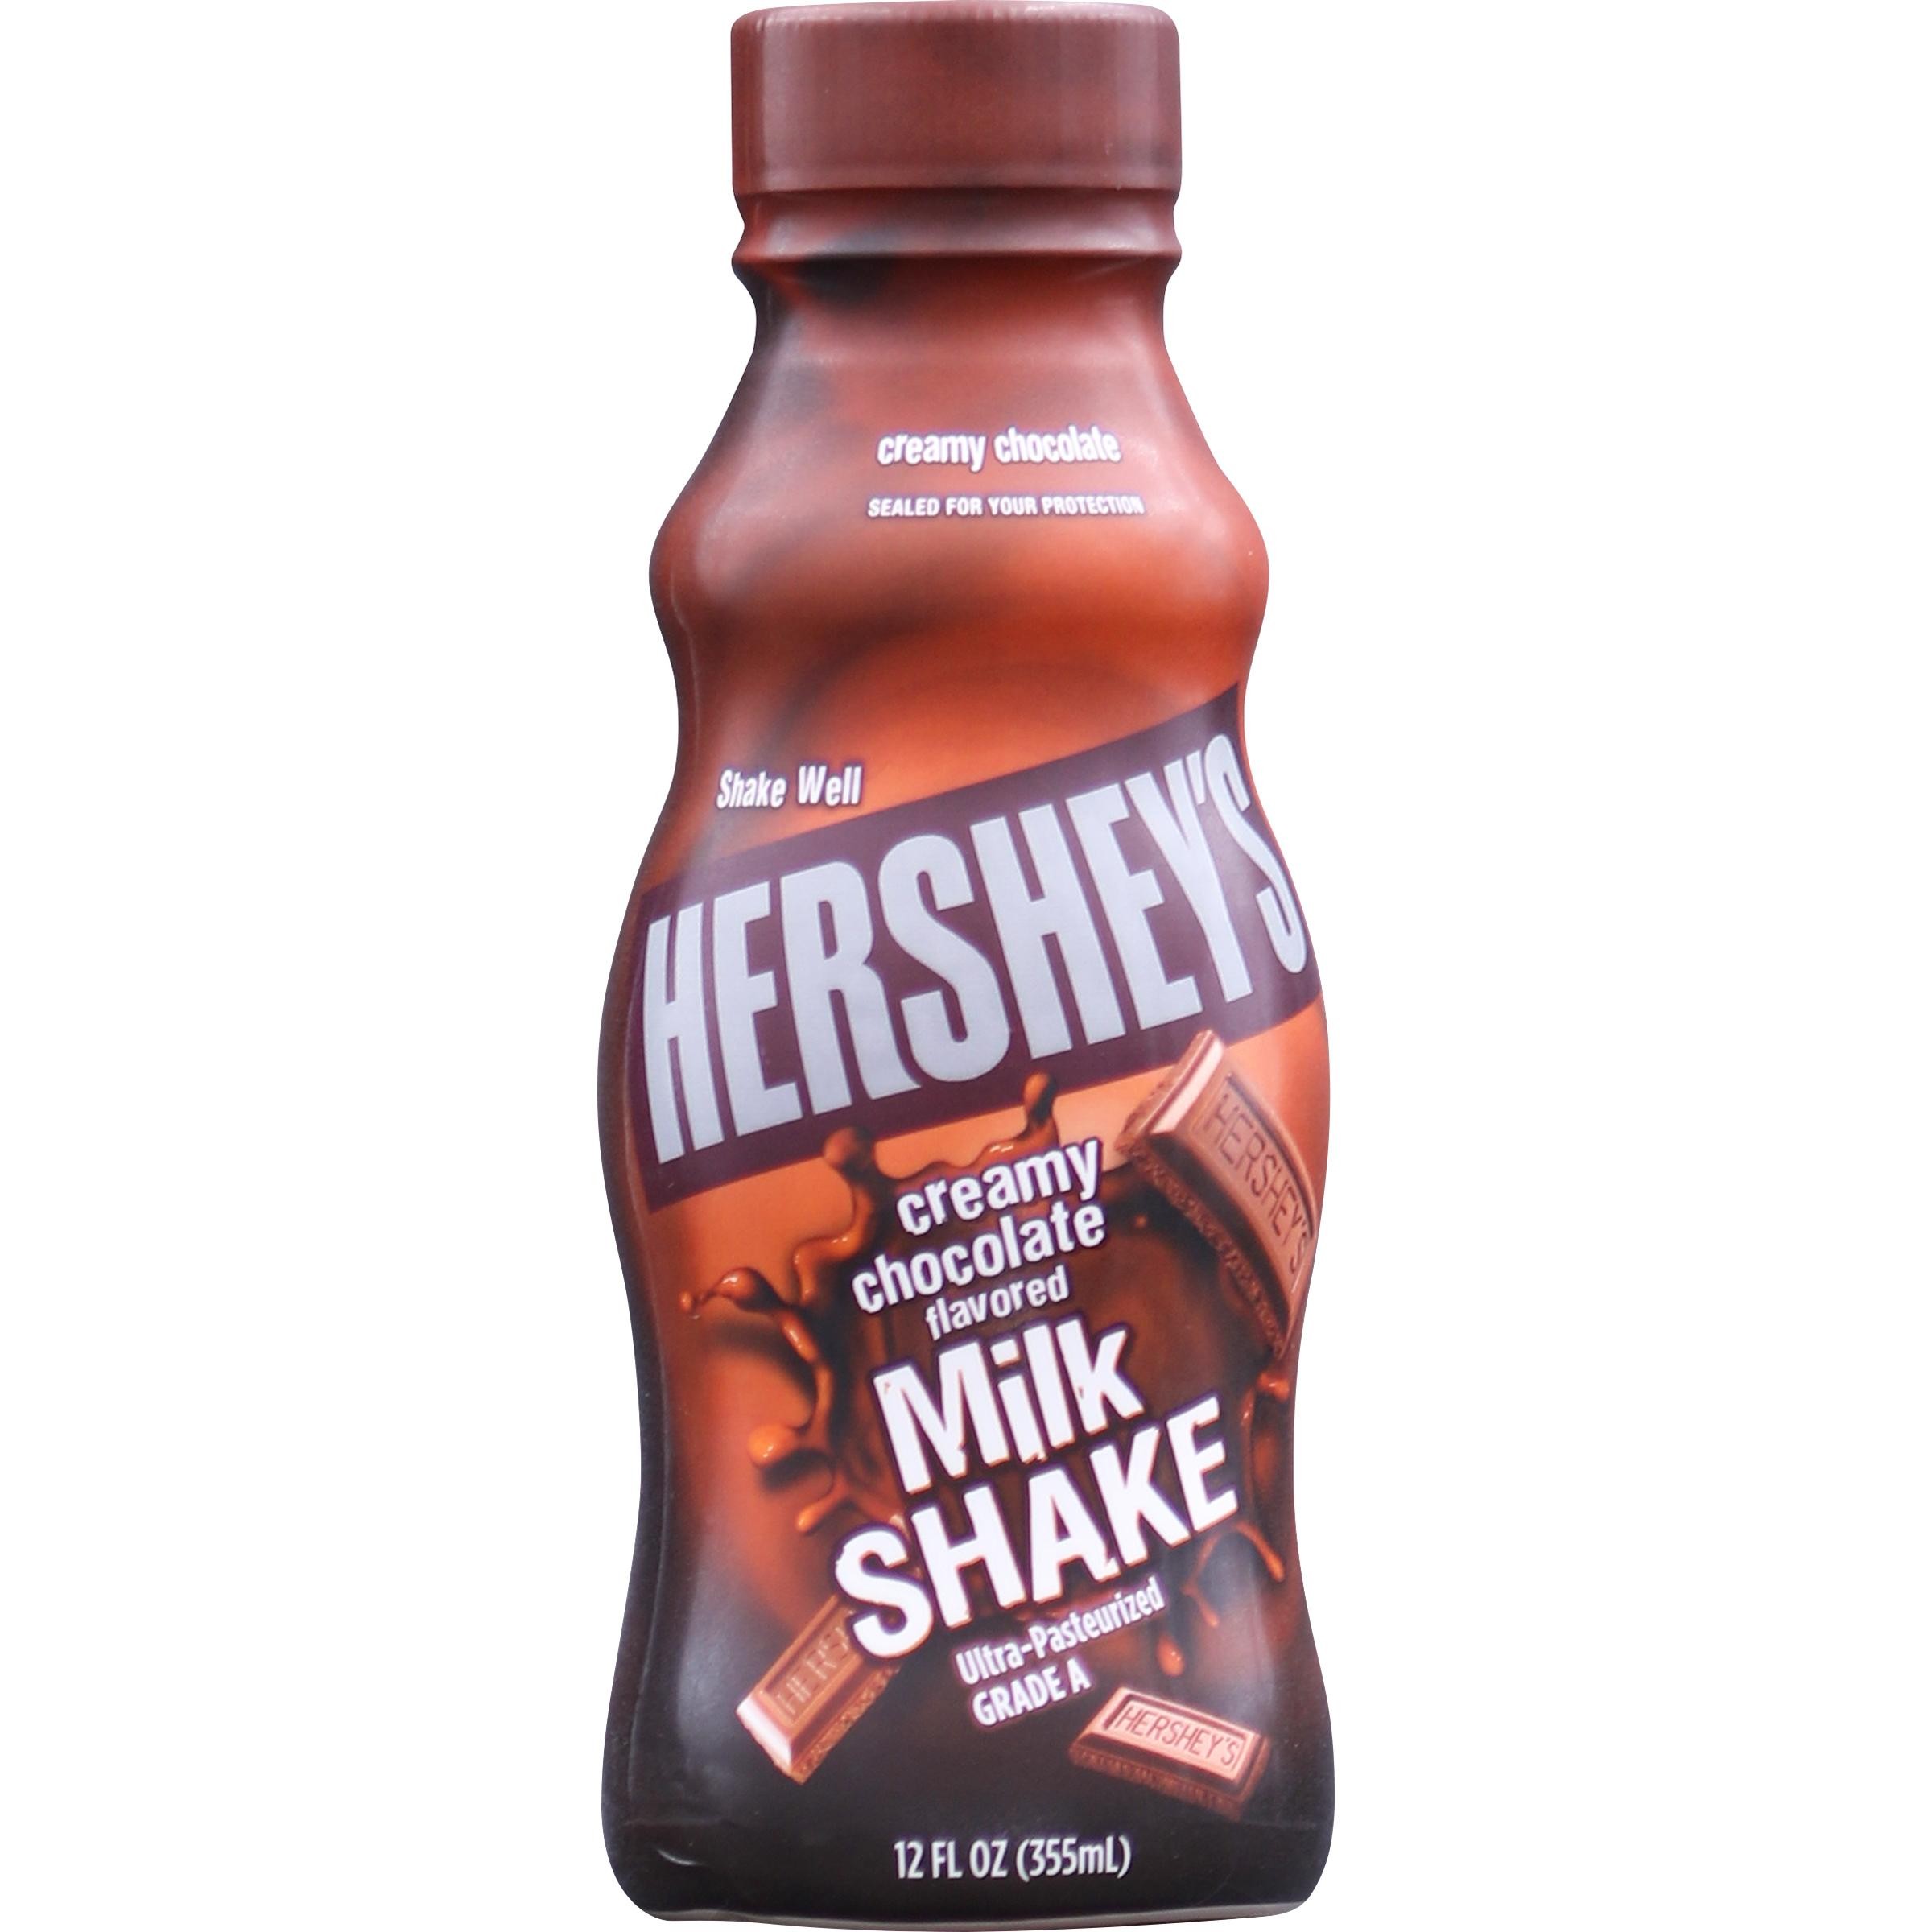 Hershey's, Milk Shake, Creamy Chocolate